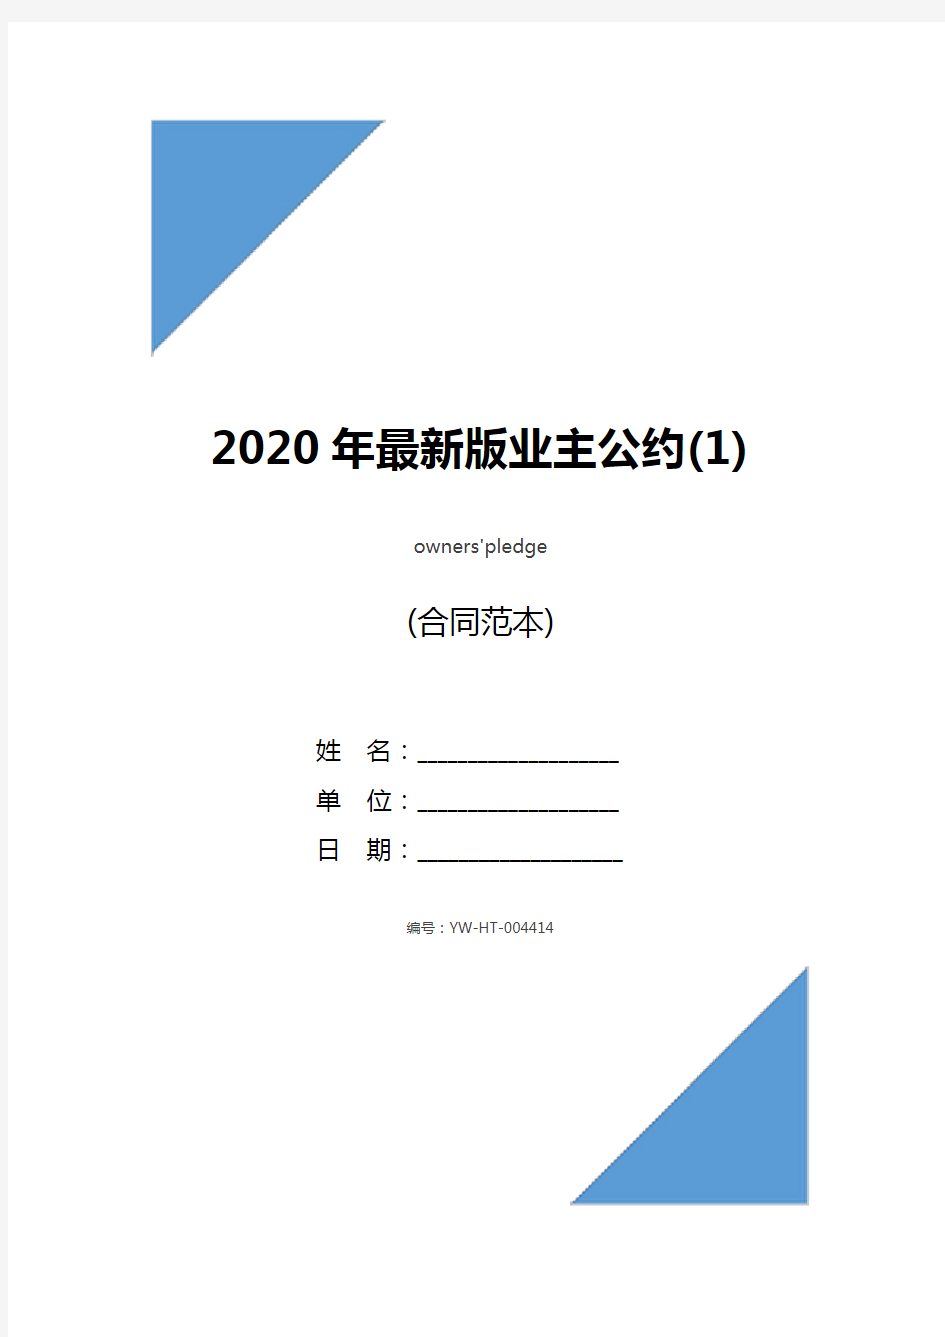 2020年最新版业主公约(1)